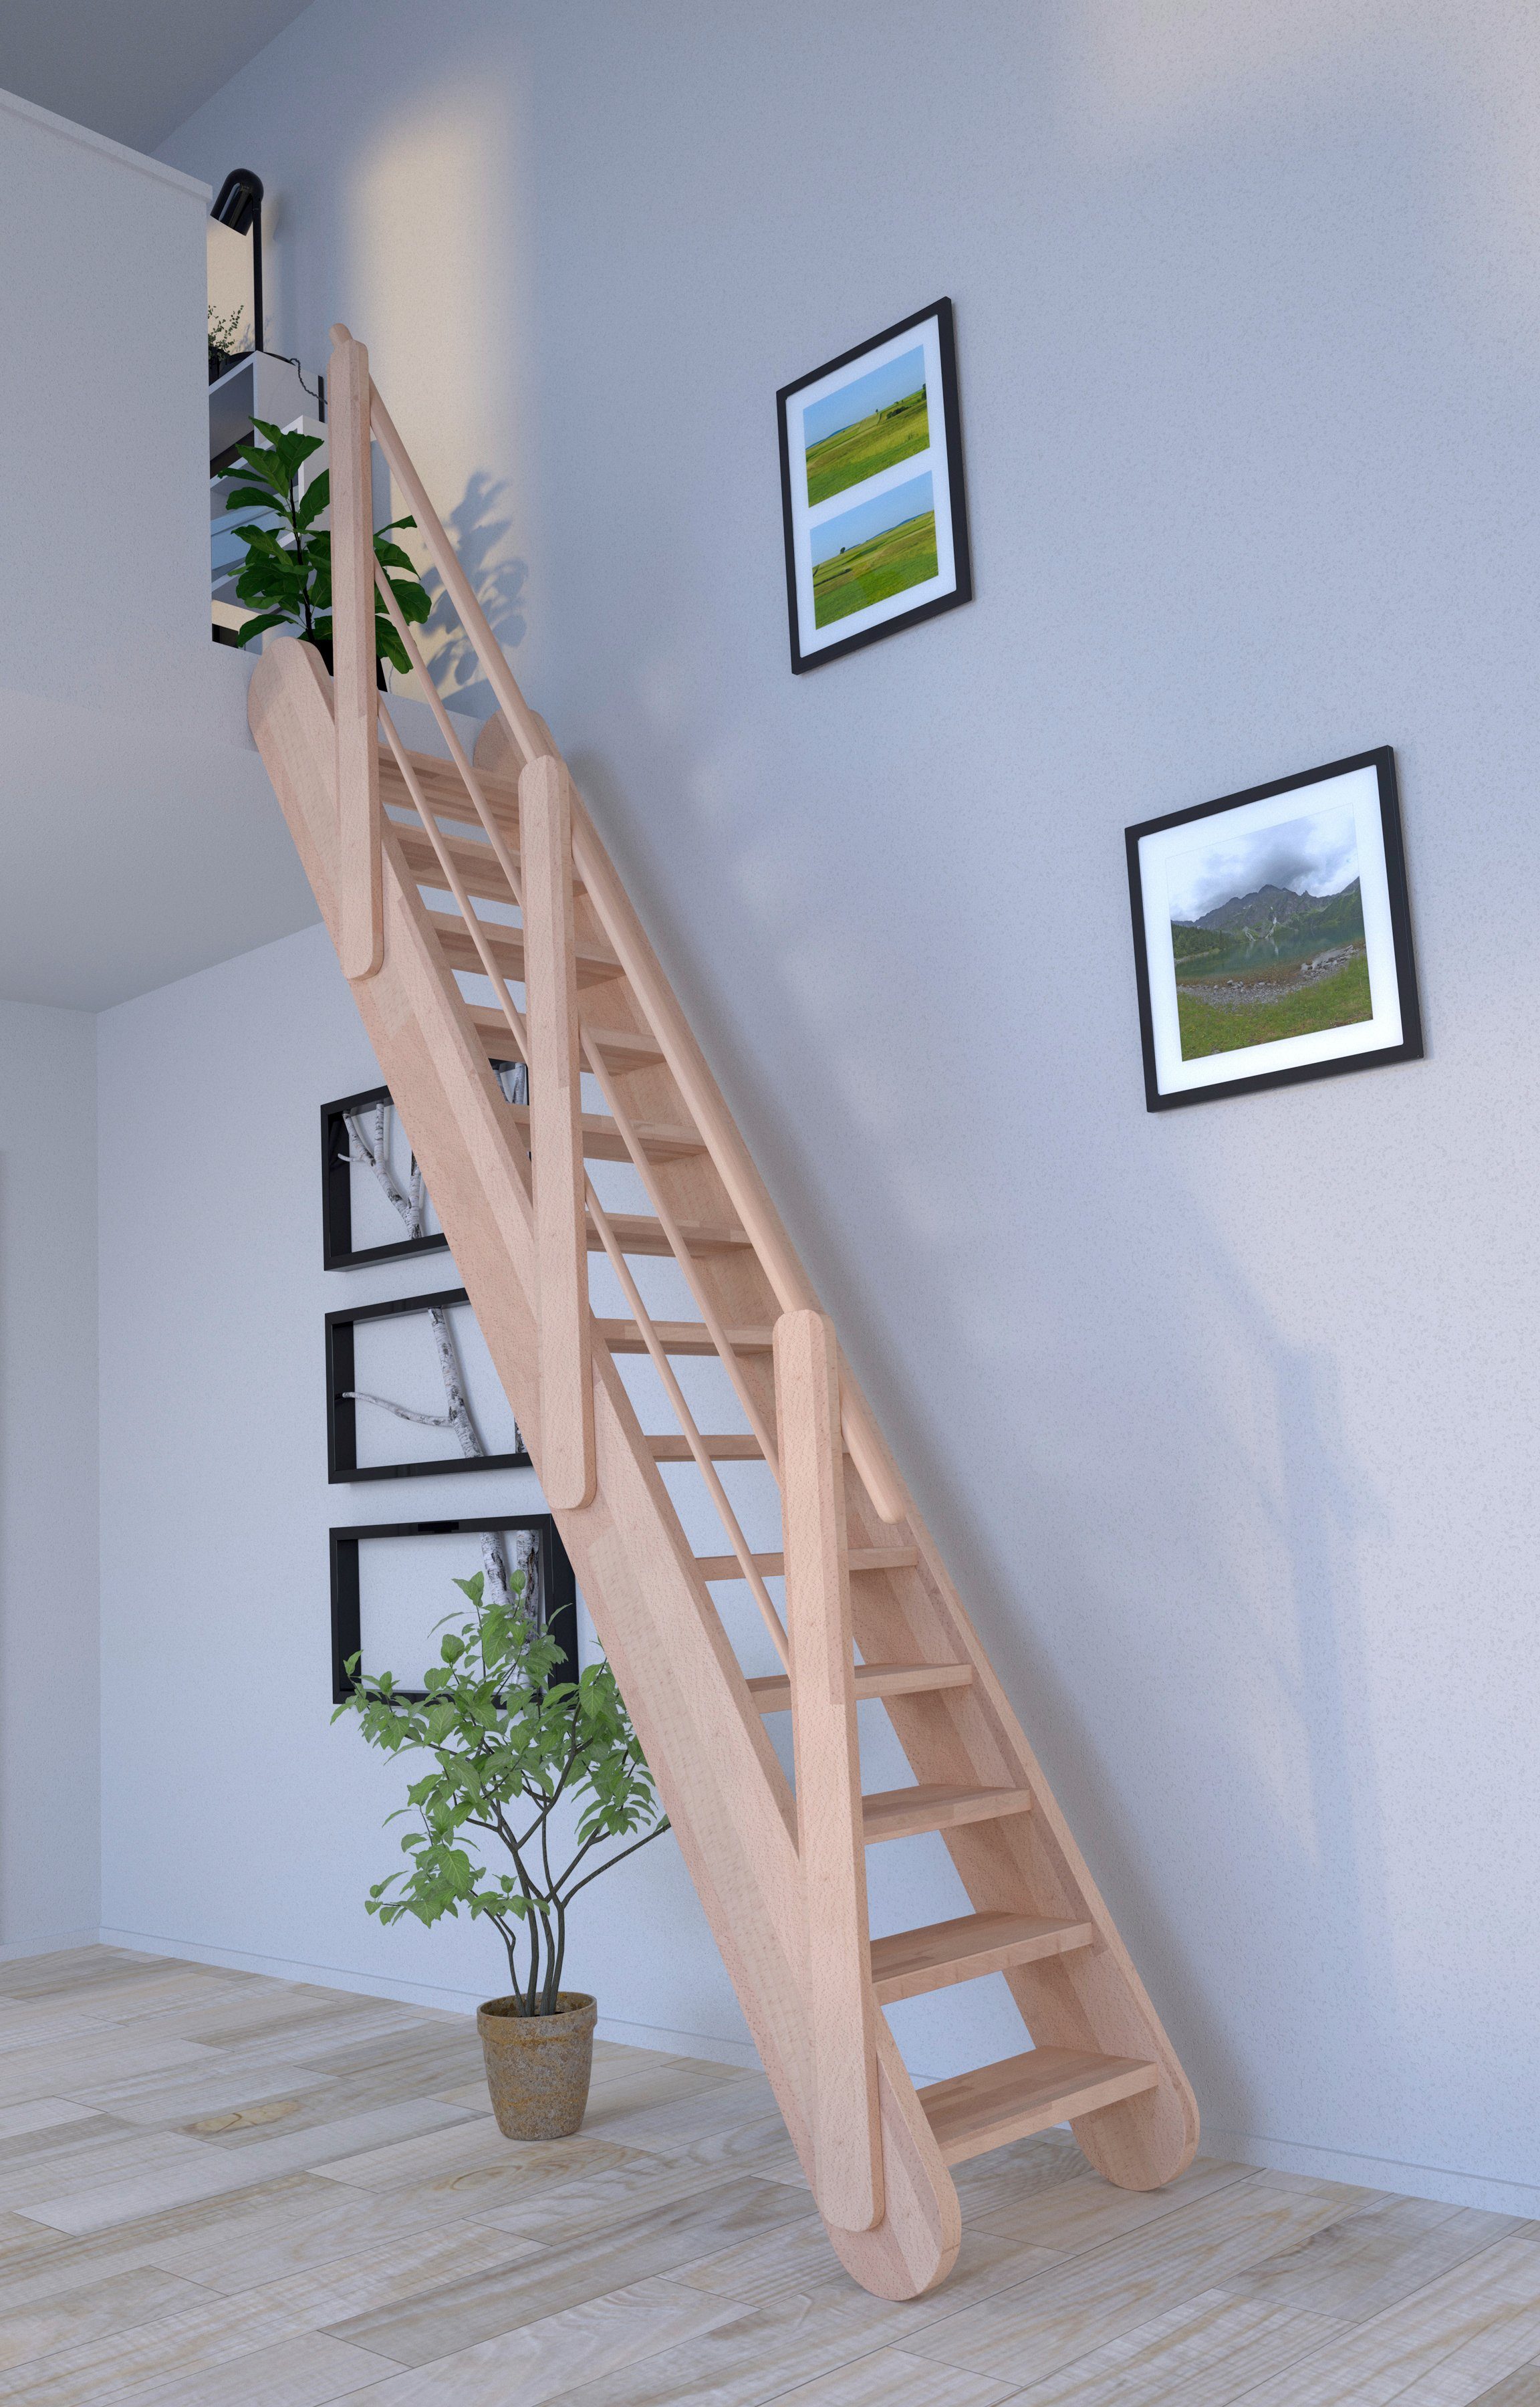 Raumspartreppe Starwood offen, Holz-Holz Stufen Wangenteile Massivholz Samos, Durchgehende Geländer, Design